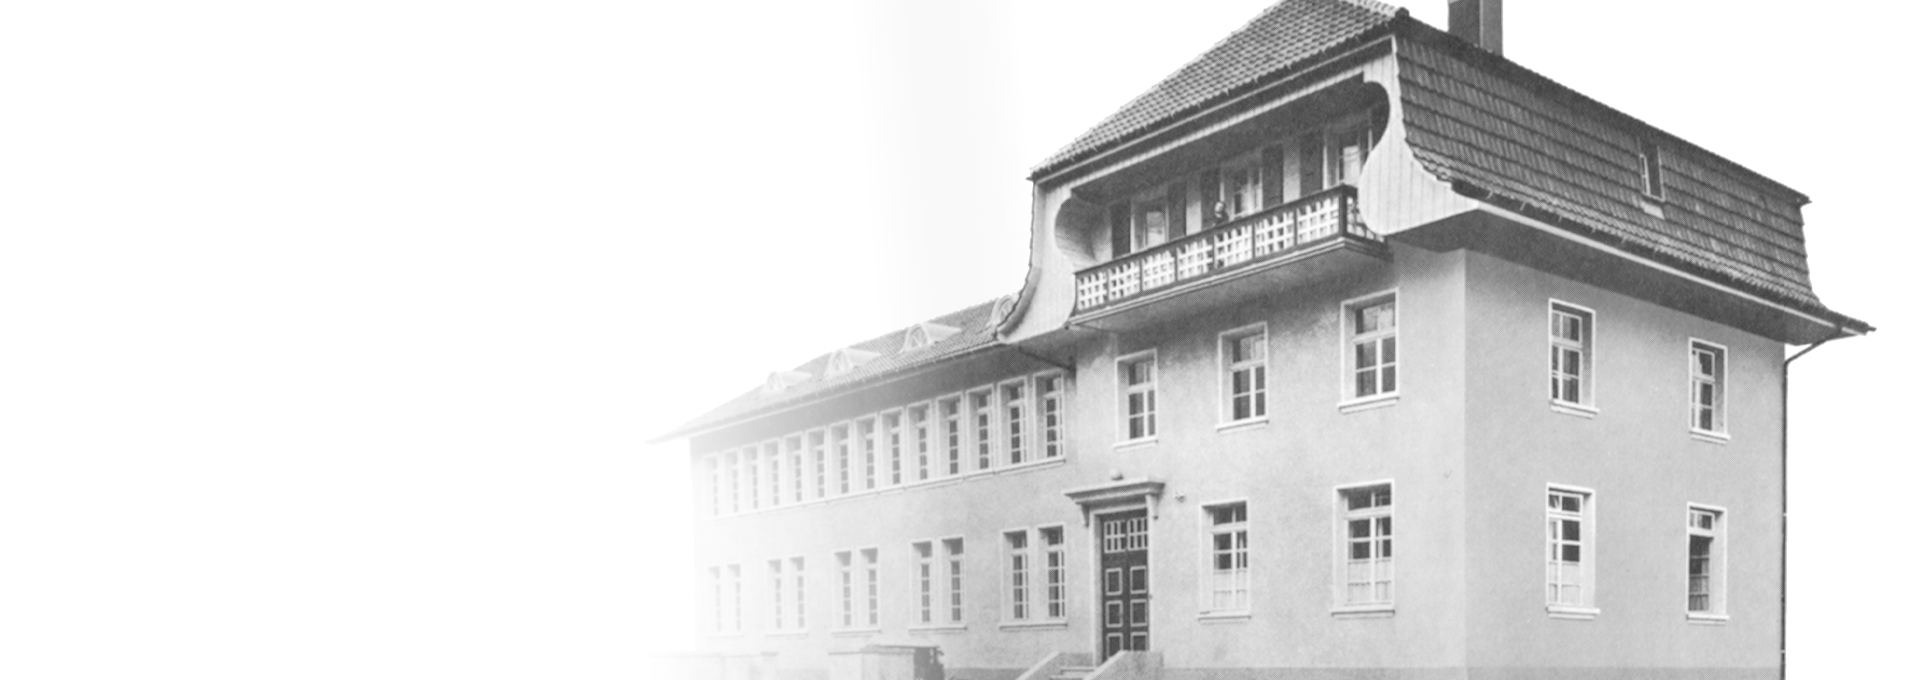 Stare czarno-białe zdjęcie pierwszej fabryki Bernafon we Flamatt, niedaleko Berna, Szwajcaria, 1925